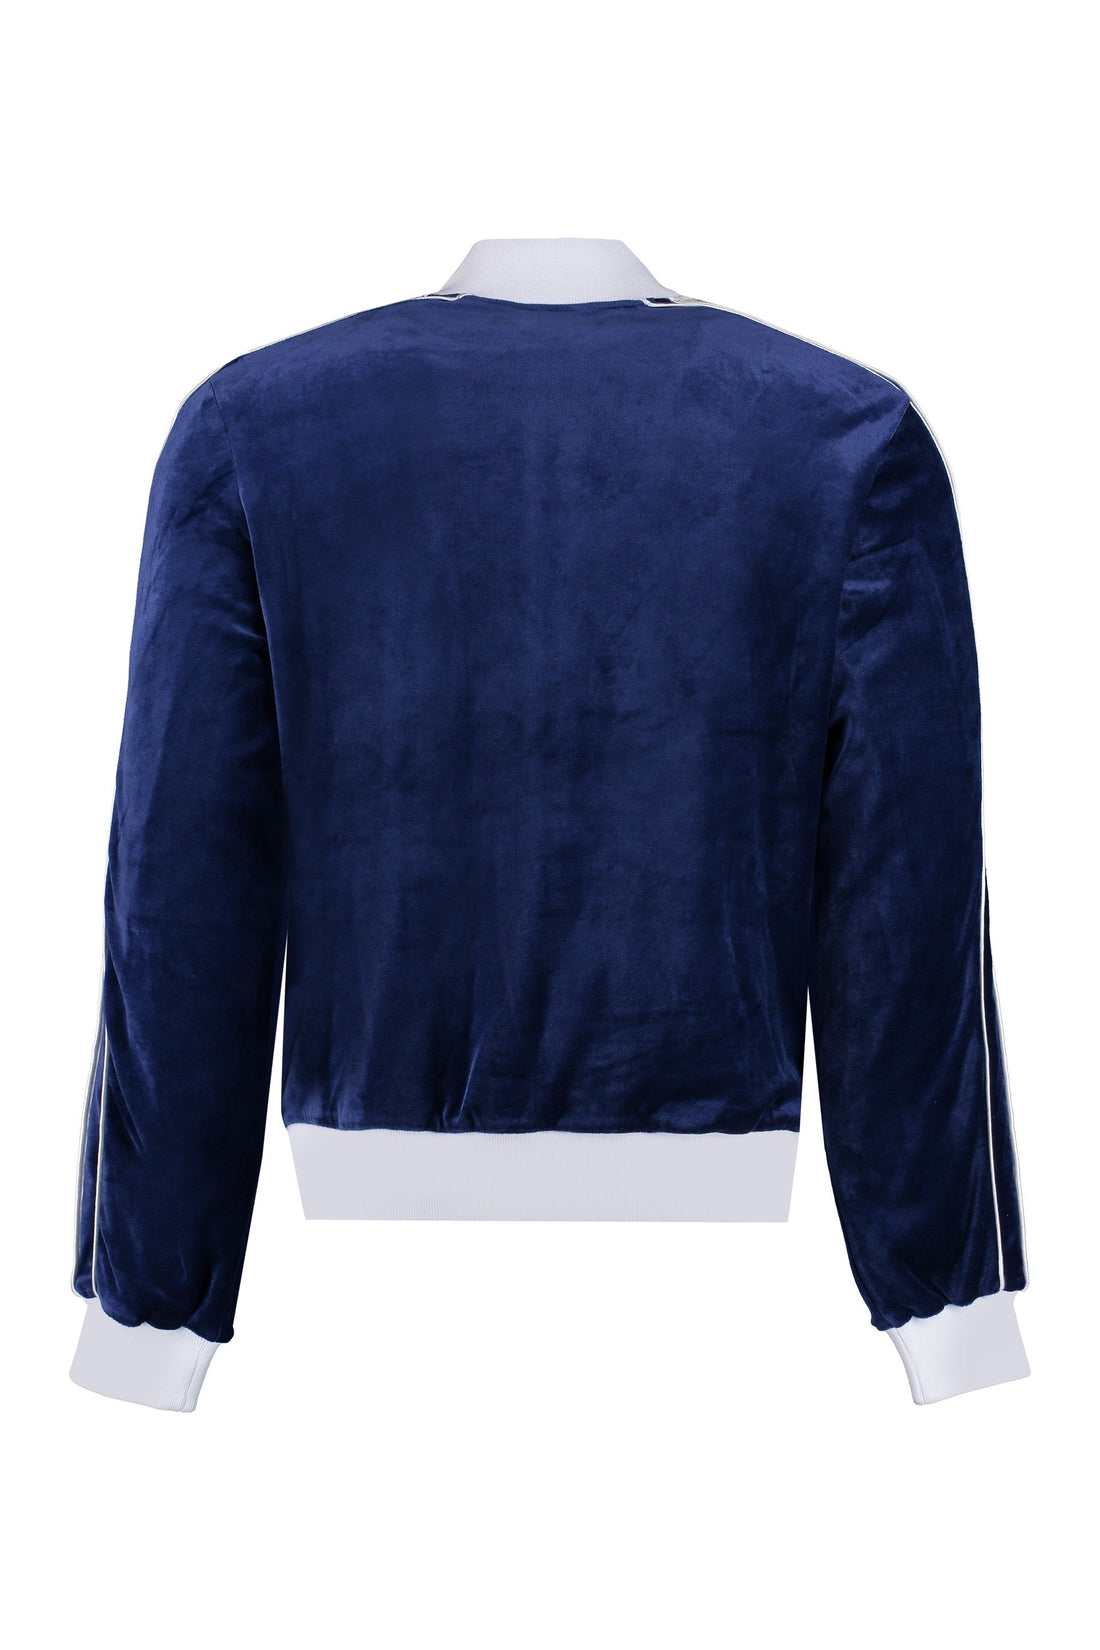 Casablanca-OUTLET-SALE-Laurel velvet full zip sweatshirt-ARCHIVIST